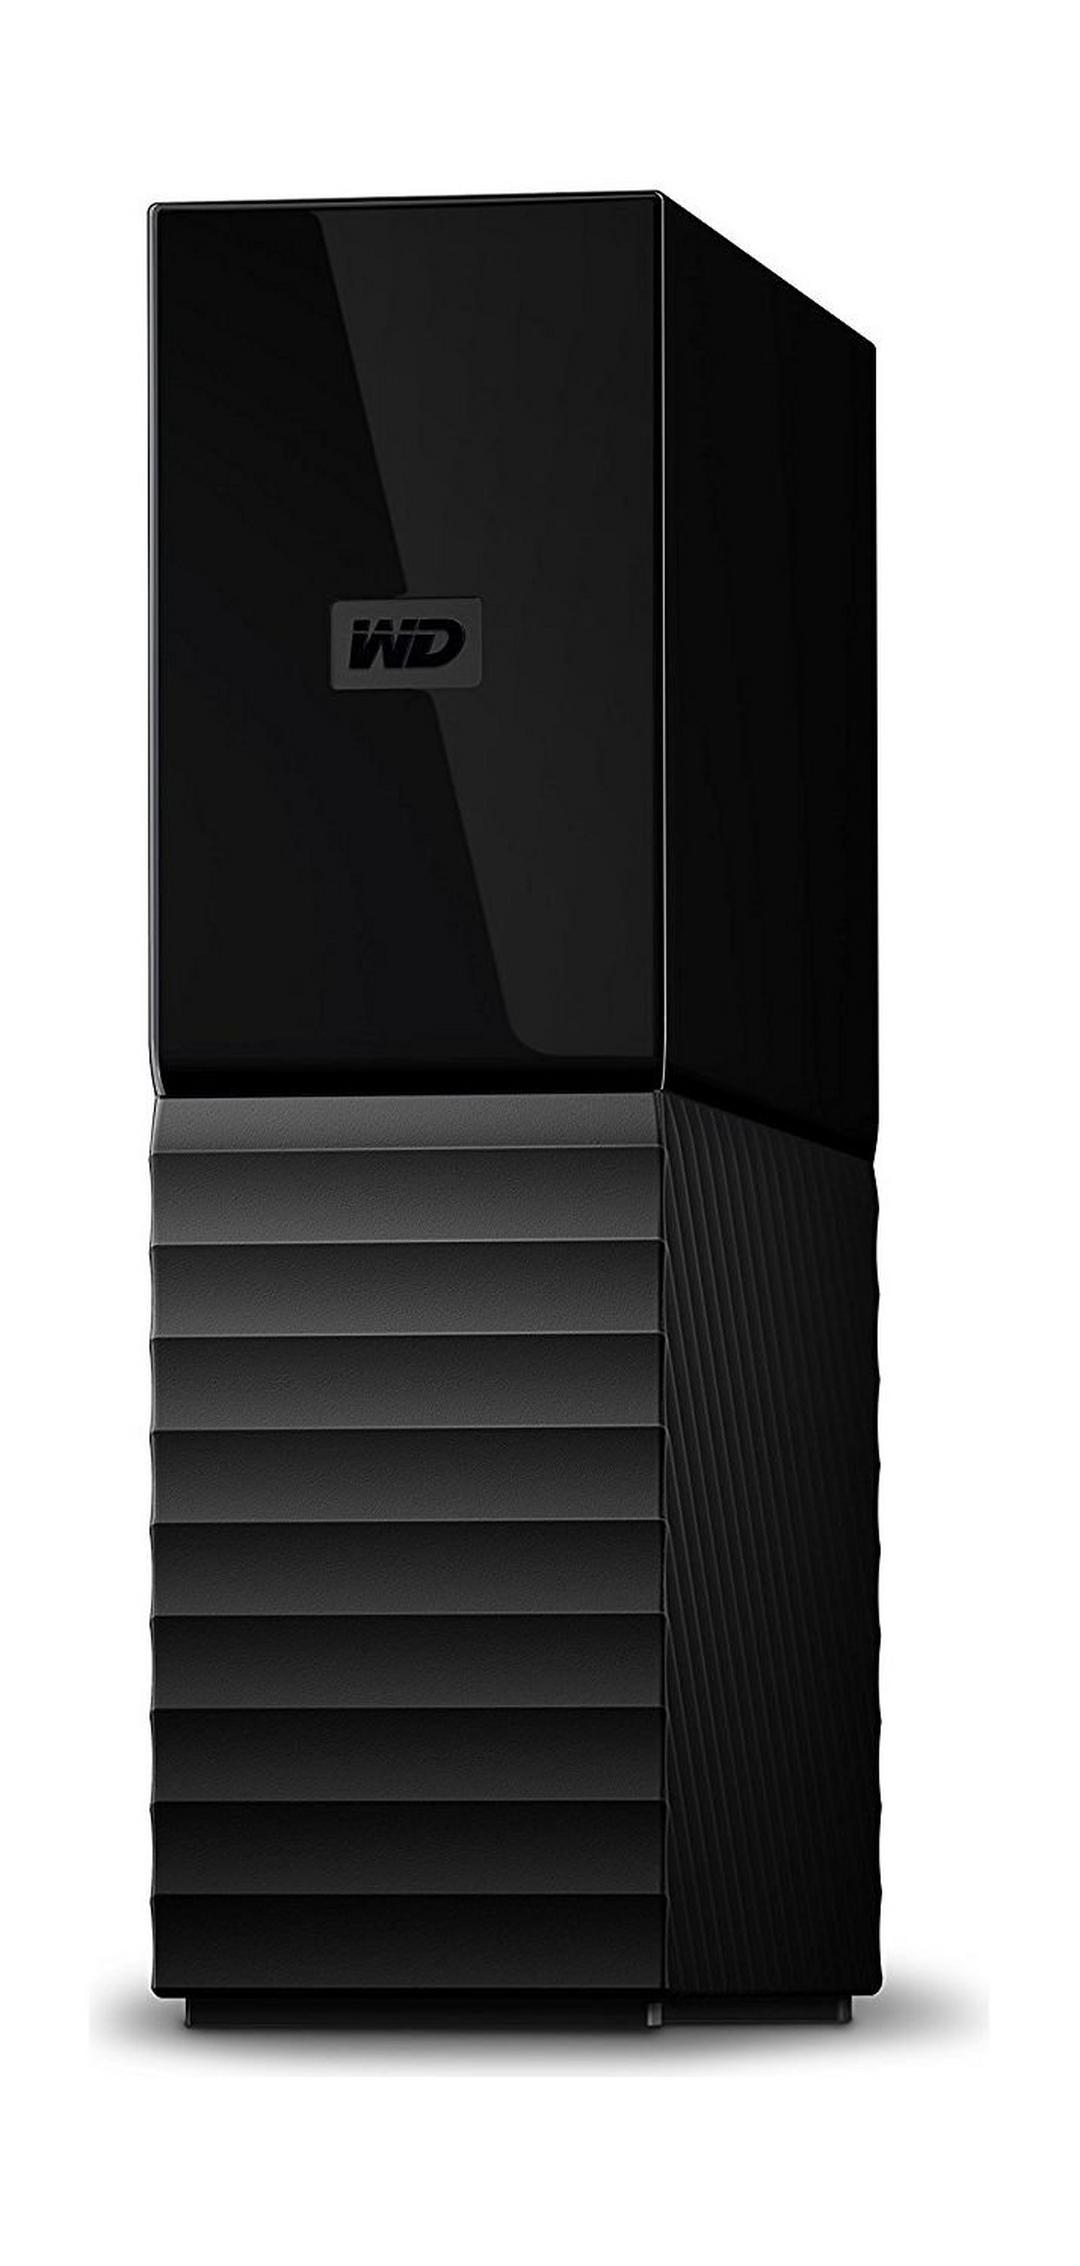 WD 8TB My Book Desktop USB 3.0 External Hard Drive (WDBBGB0080HBK)